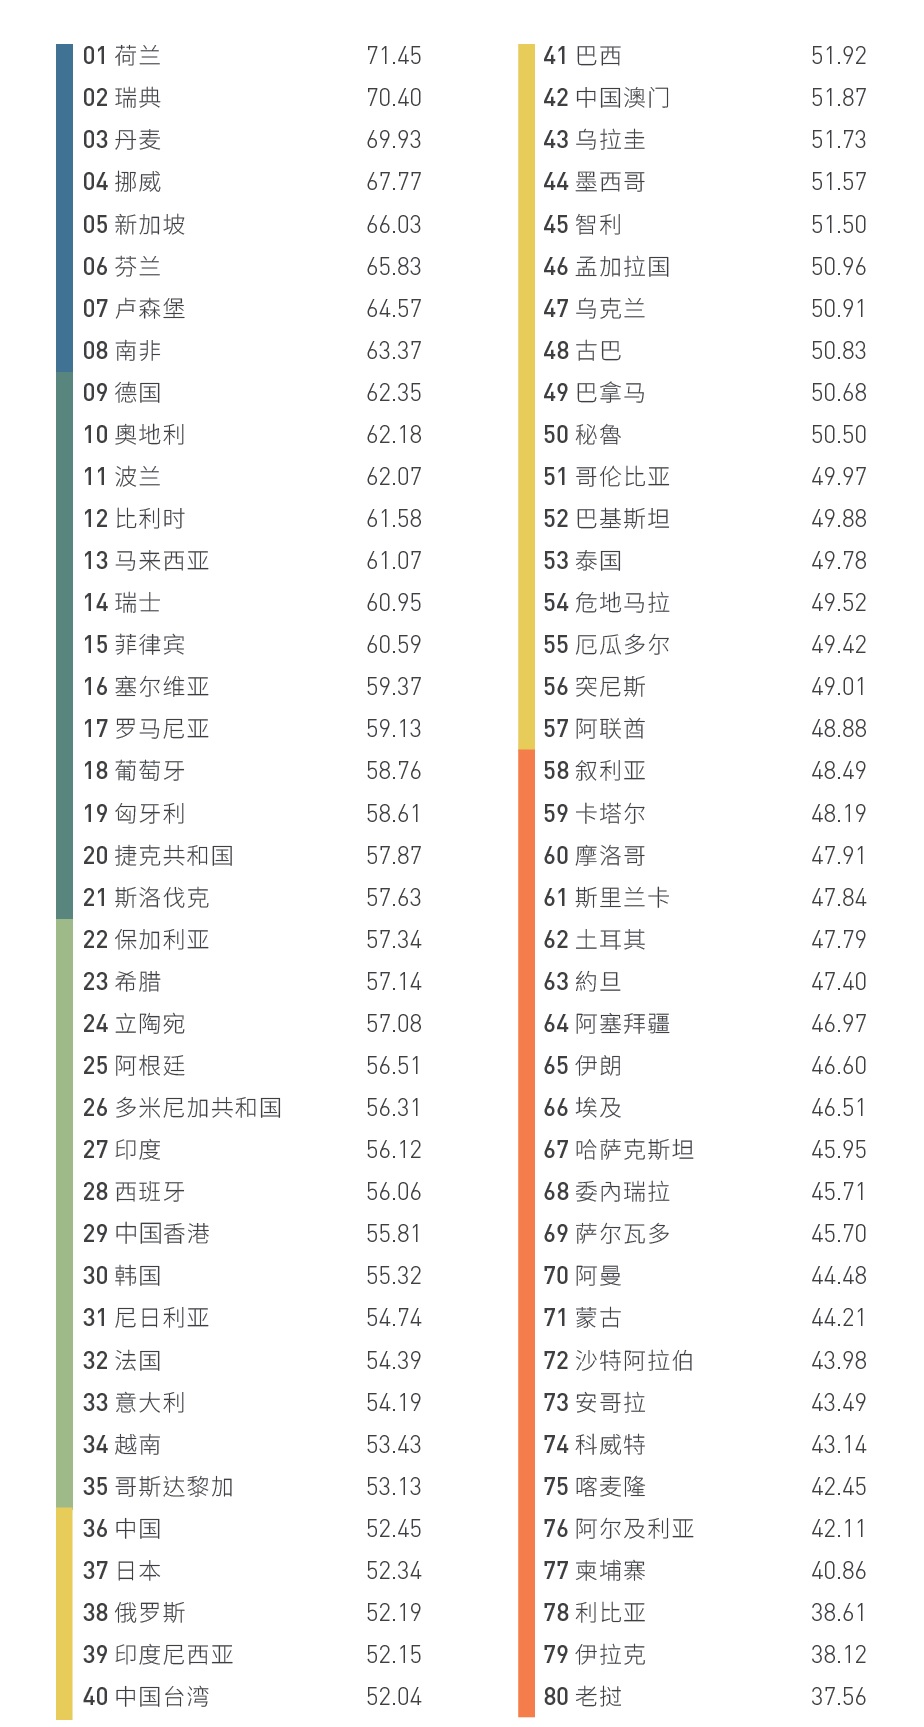 英孚英语熟练度指标全球排名 中国人英语水平